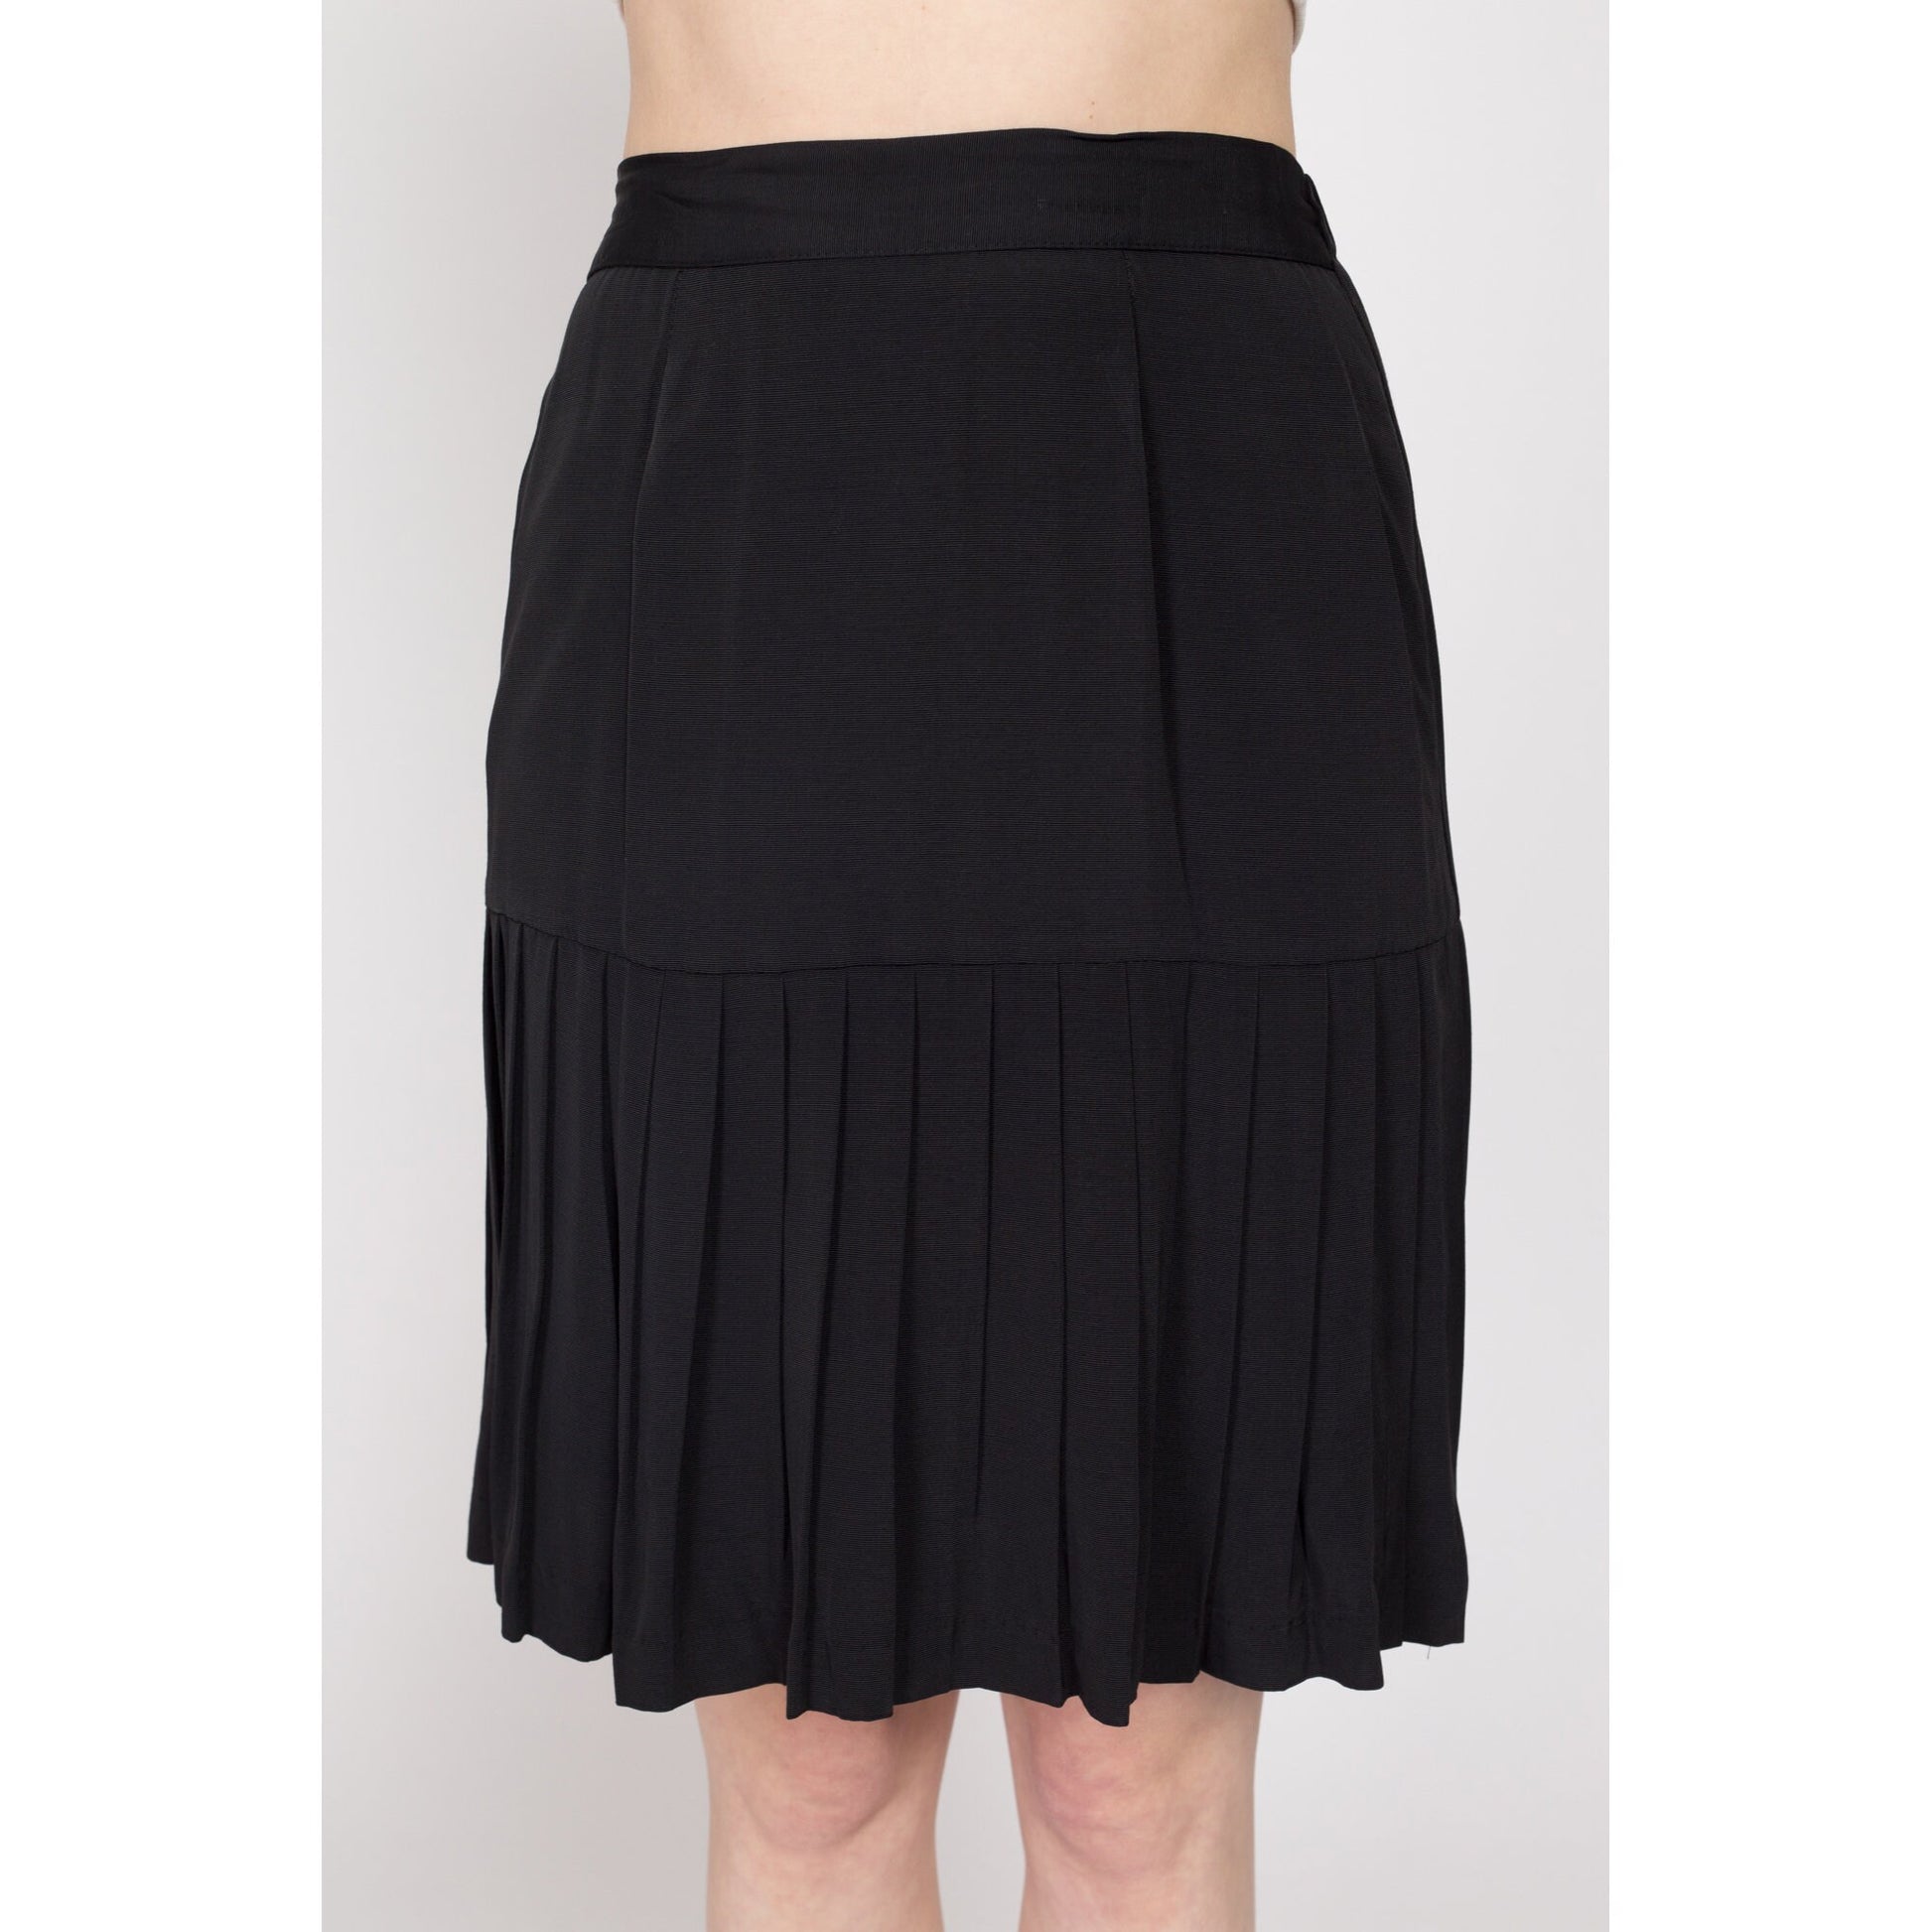 Medium 80s Black Pleated Mini Skirt " | Vintage High Waisted Grunge Schoolgirl Skirt